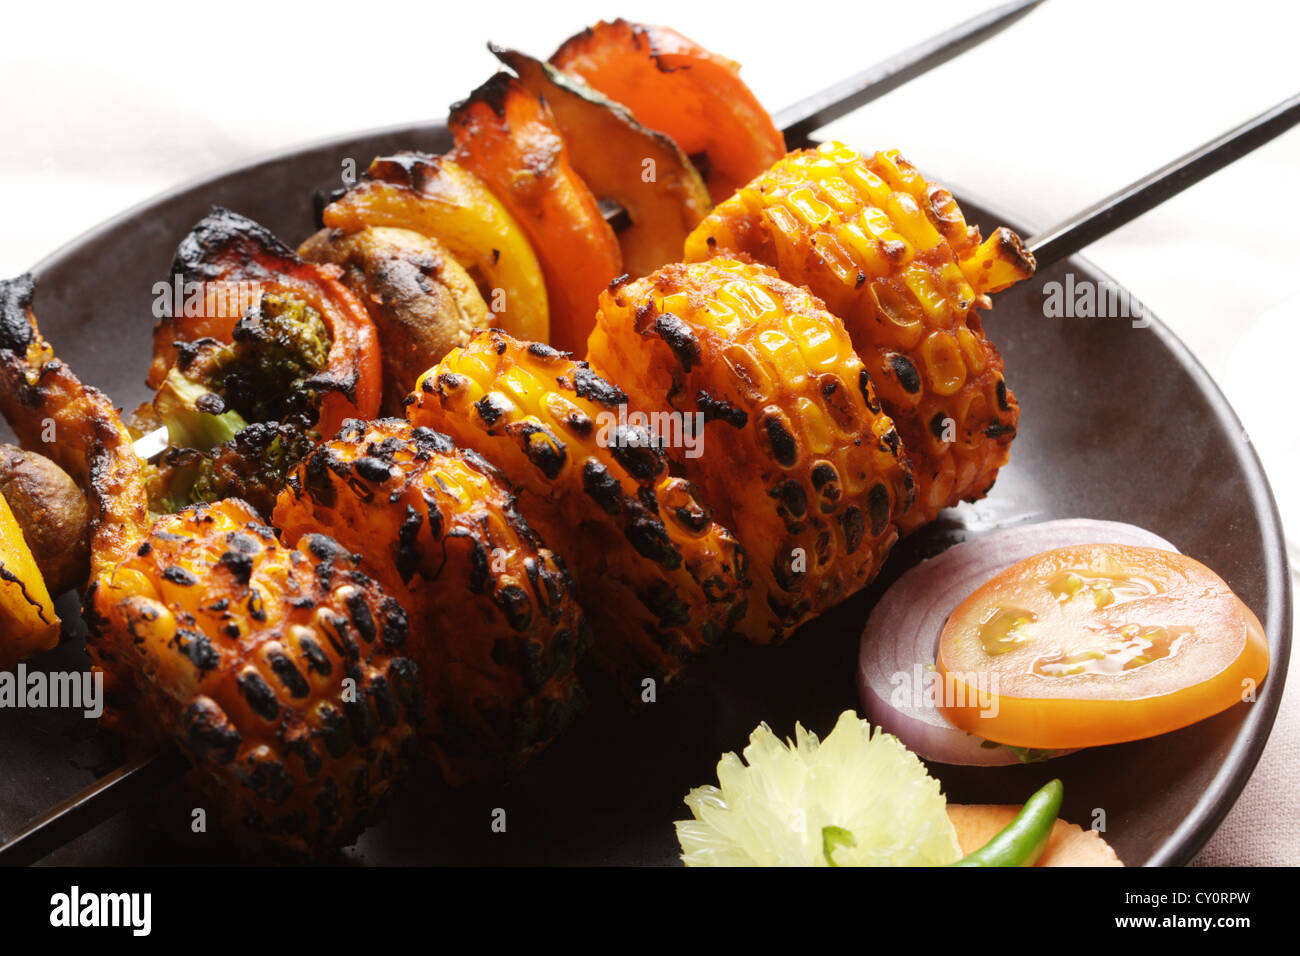 Grill Kebab Platte sind kleine Fleischstücke am Spieß über Holzkohle oder elektrische Hitze gebraten. Stockfoto